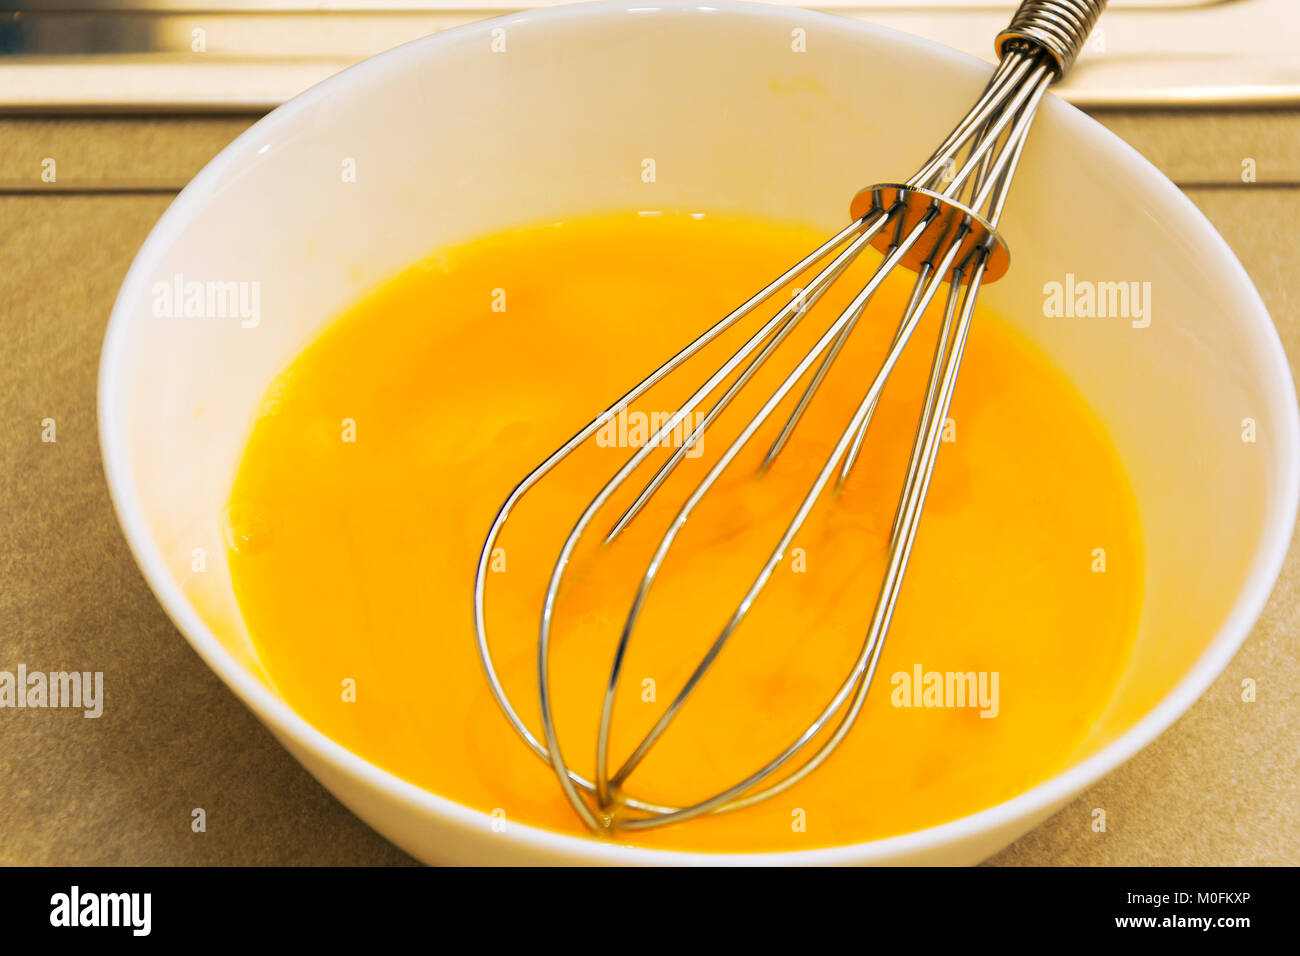 Cucina metallica mescolare con una frusta in un giallo di pasta all'uovo Foto Stock